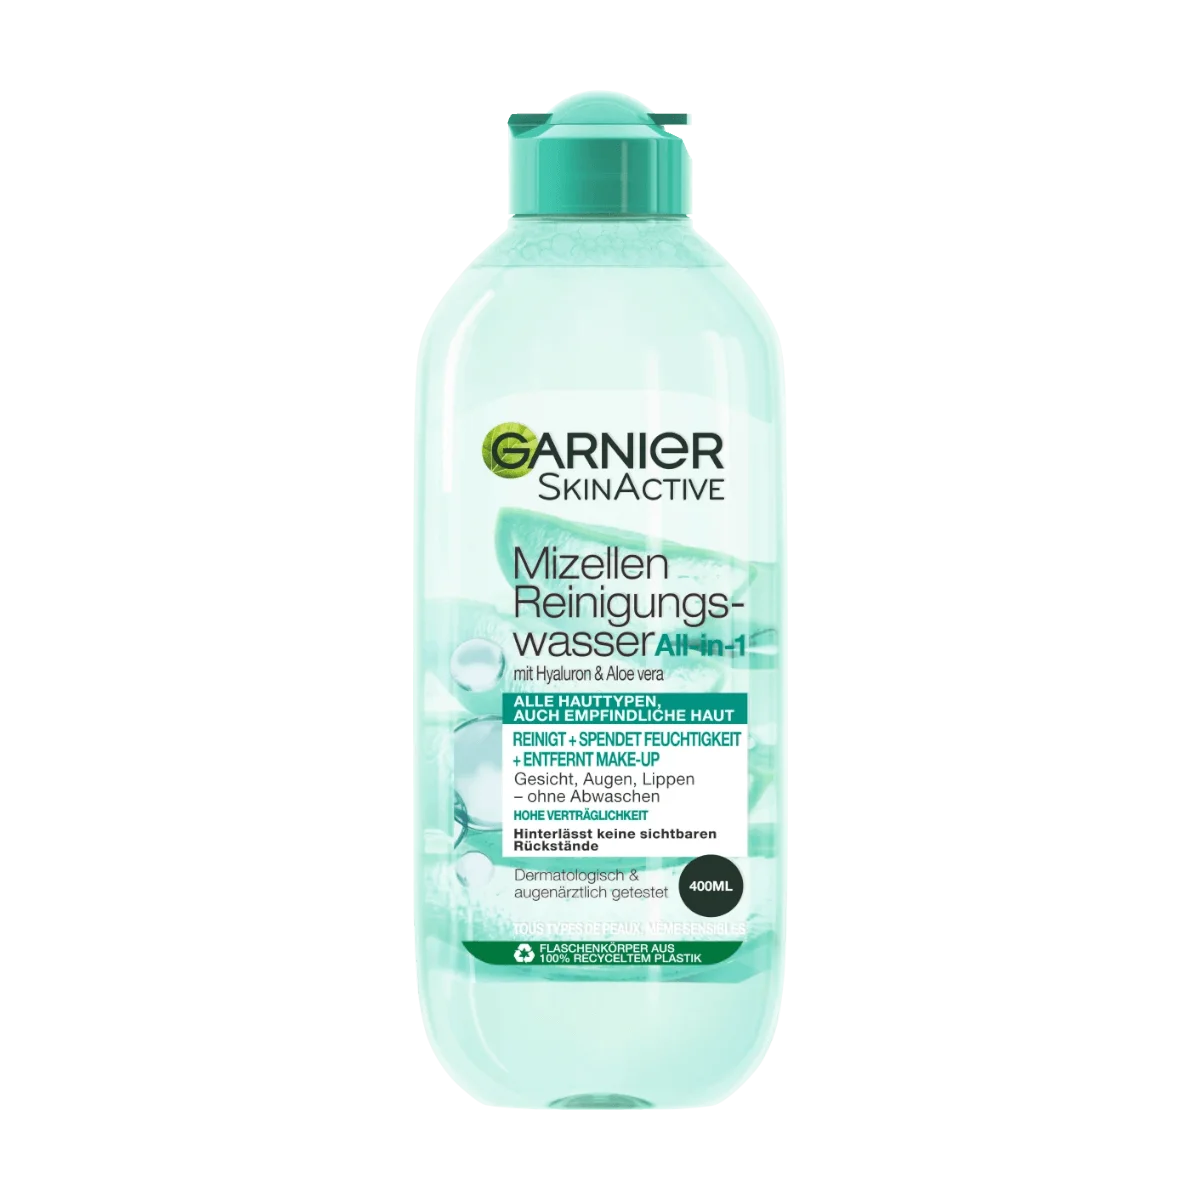 Garnier SkinActive Mizellen Reinigungswasser All-in-1 mit Hyaluron and Aloe Vera, 400 ml